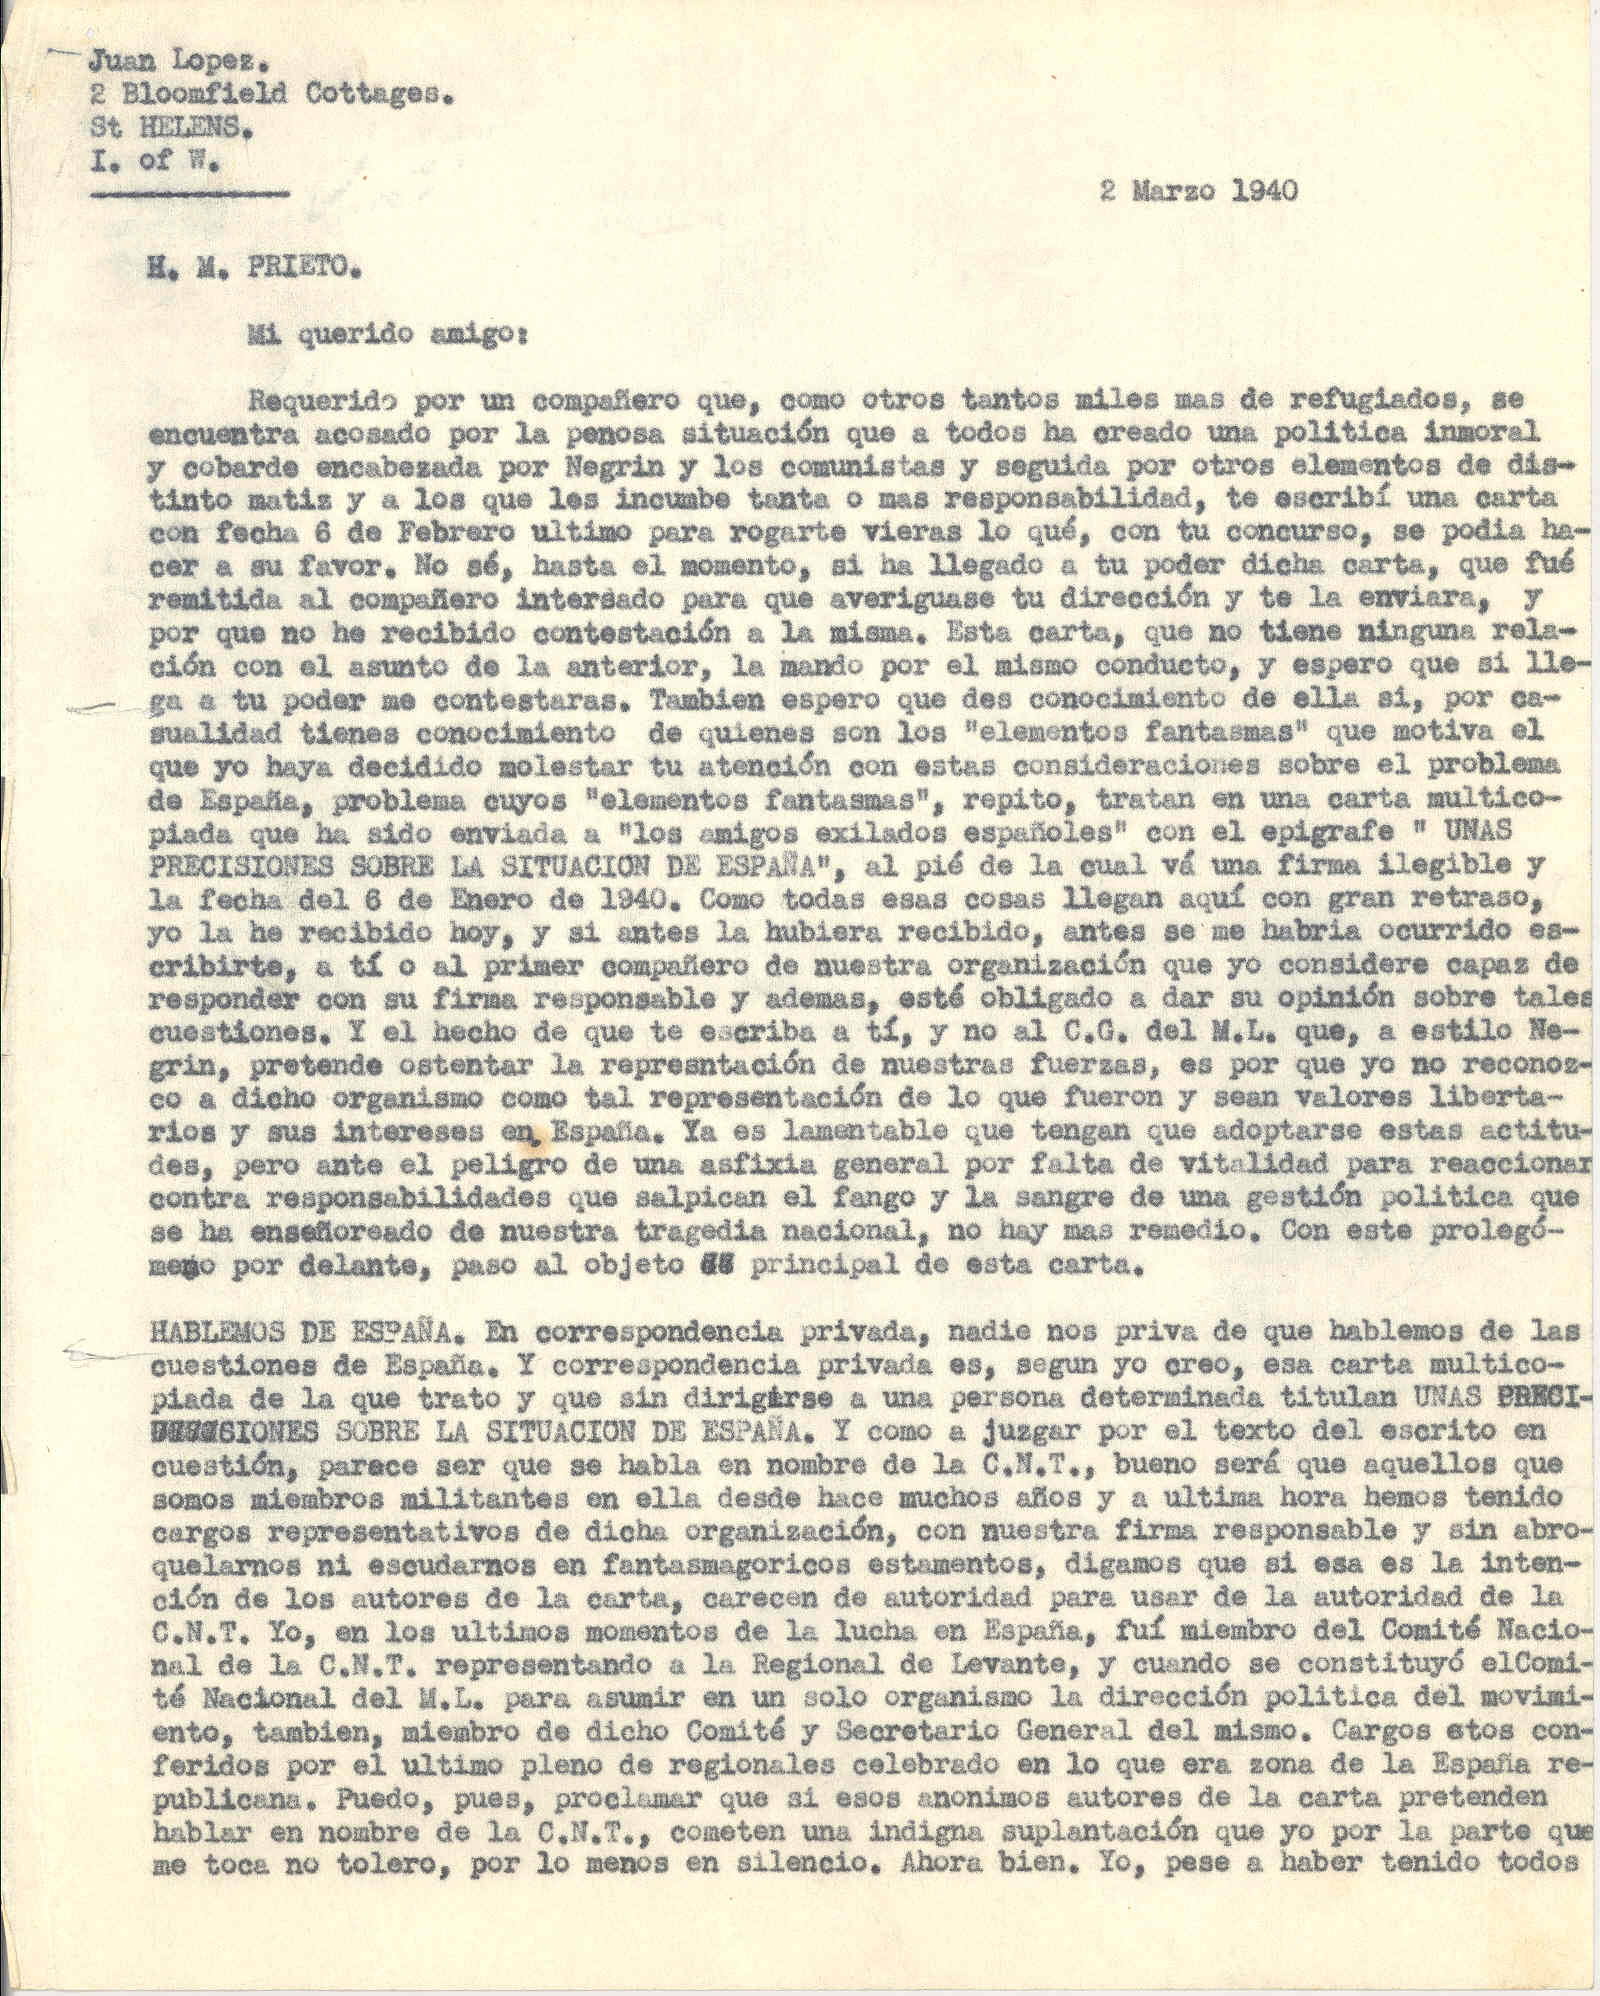 Carta a Horacio Martínez Prieto en la que critica una carta abierta titulada 